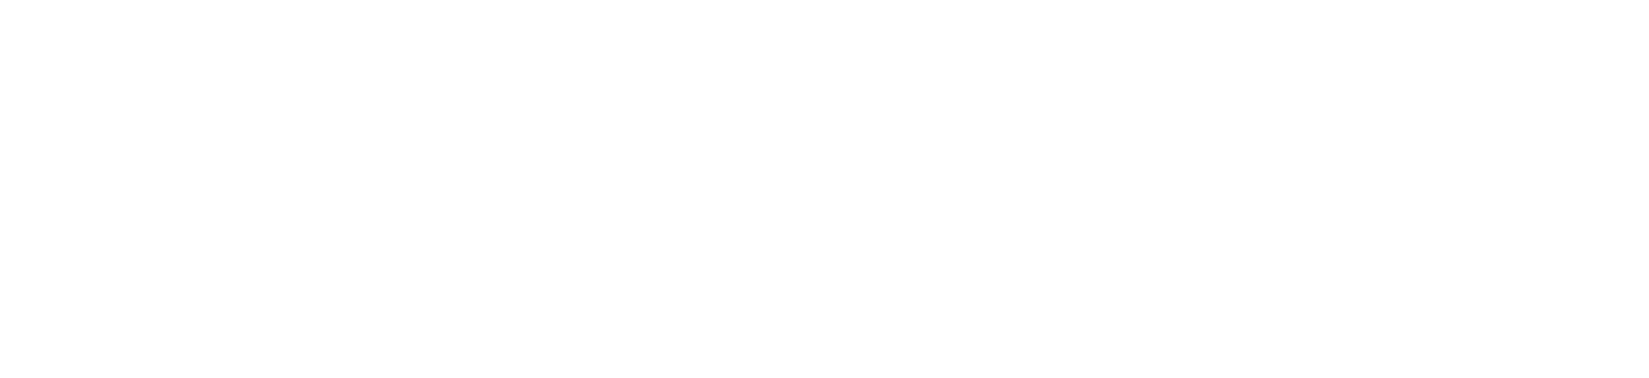 Boeing logo large for dark backgrounds (transparent PNG)